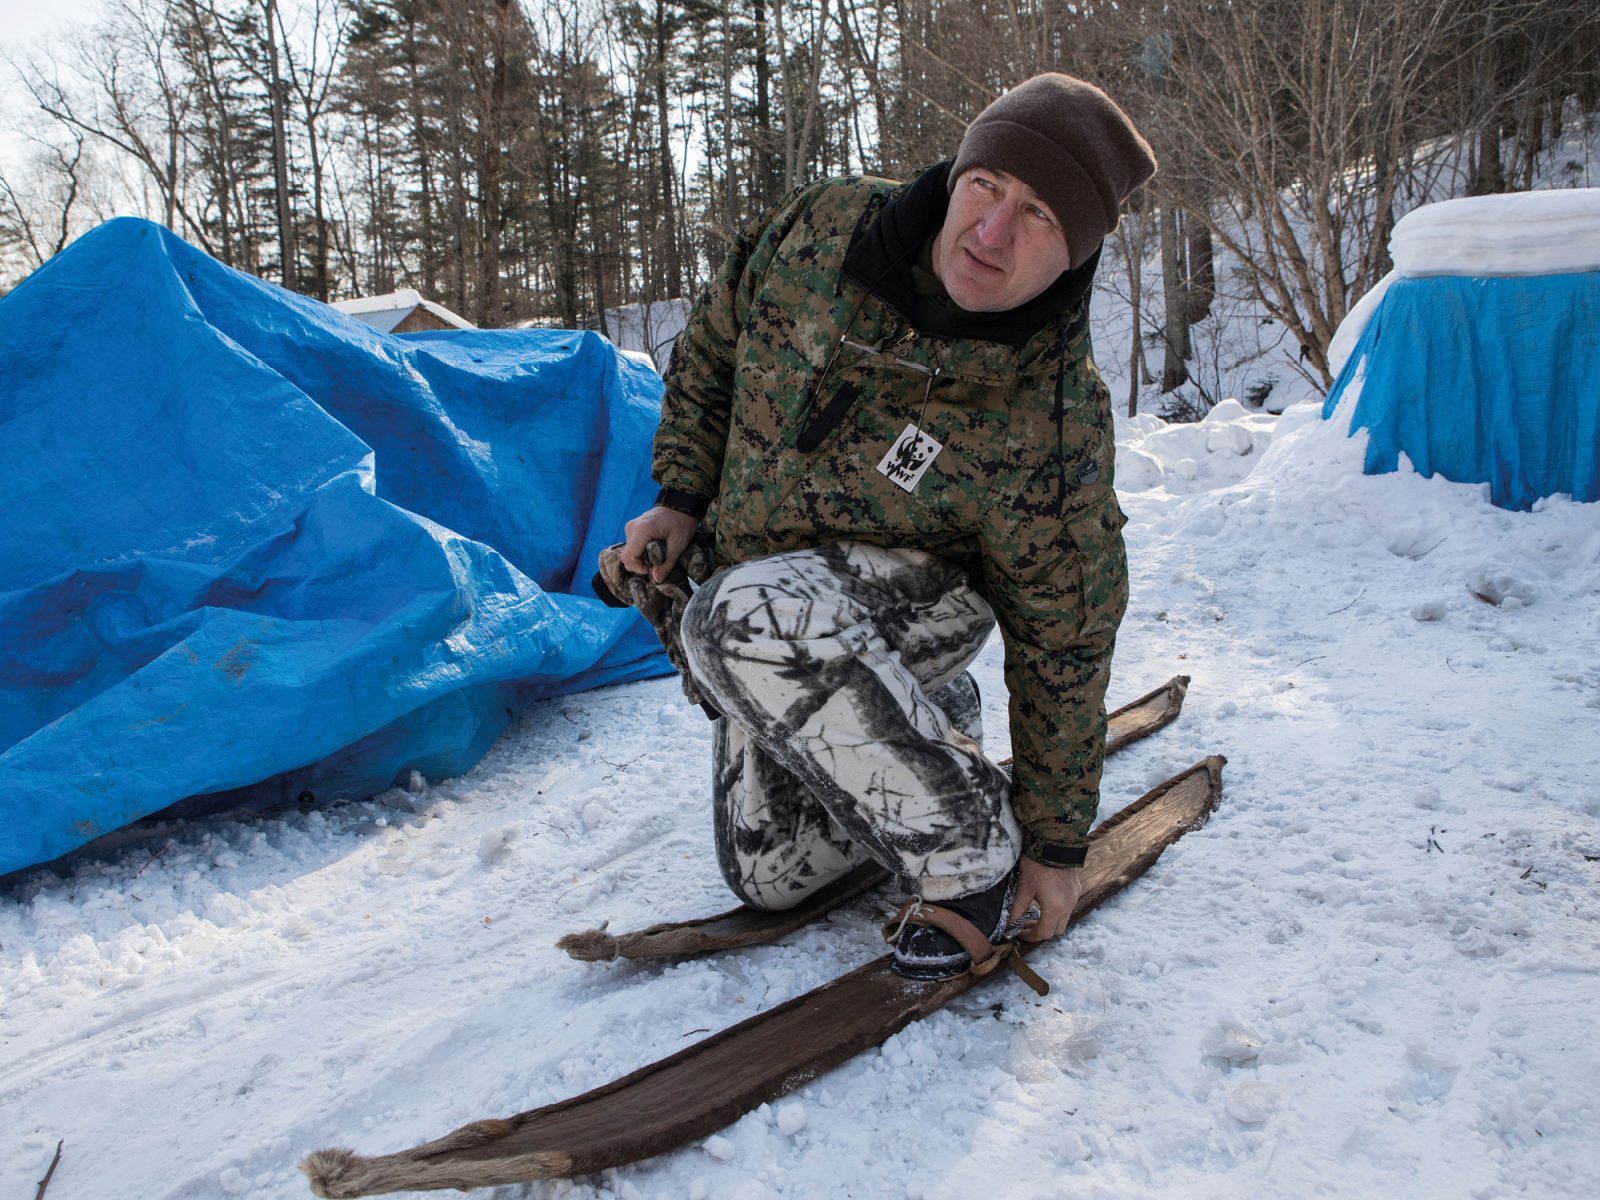 Man i varma kläder och mössa tar på sig gammaldags skidor på snötäckt mark, framför blåa tält.